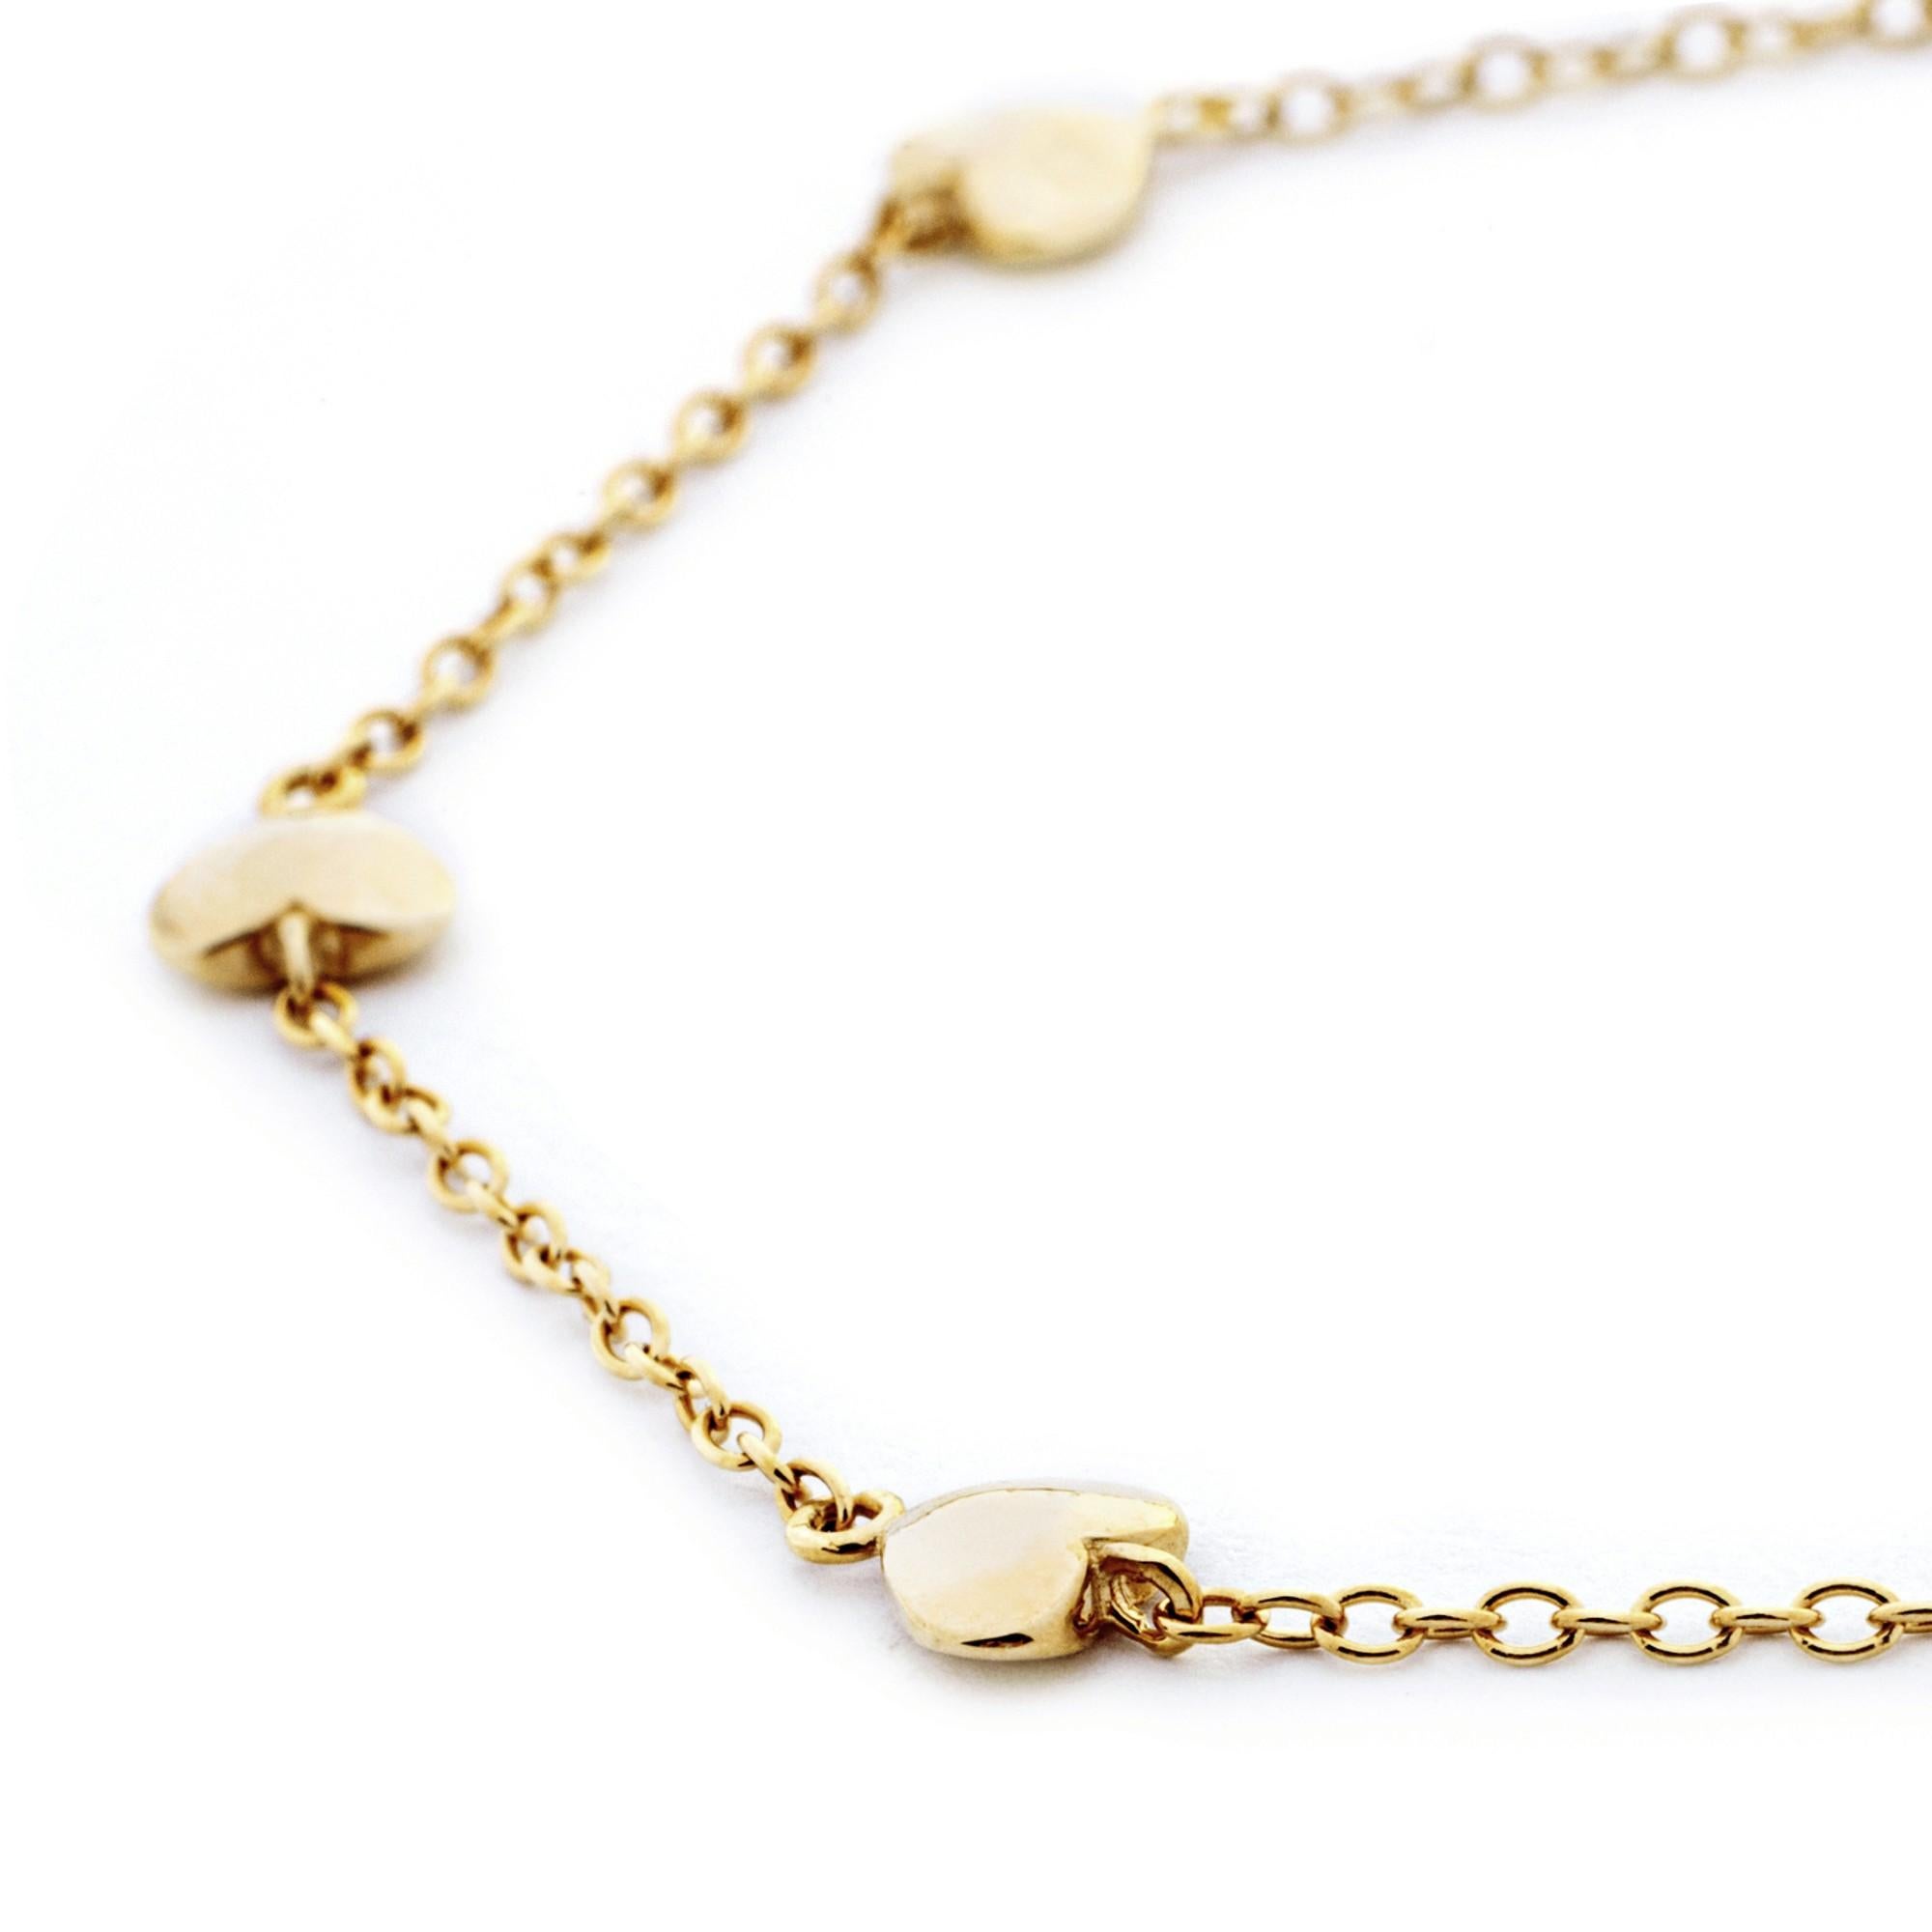 Alex Jona Design-Kollektion, handgefertigt in Italien, 18 Karat Gelbgold, Herz-Kettenarmband.

Die Juwelen von Alex Jona zeichnen sich nicht nur durch ihr besonderes Design und die hervorragende Qualität der Edelsteine aus, sondern auch durch die